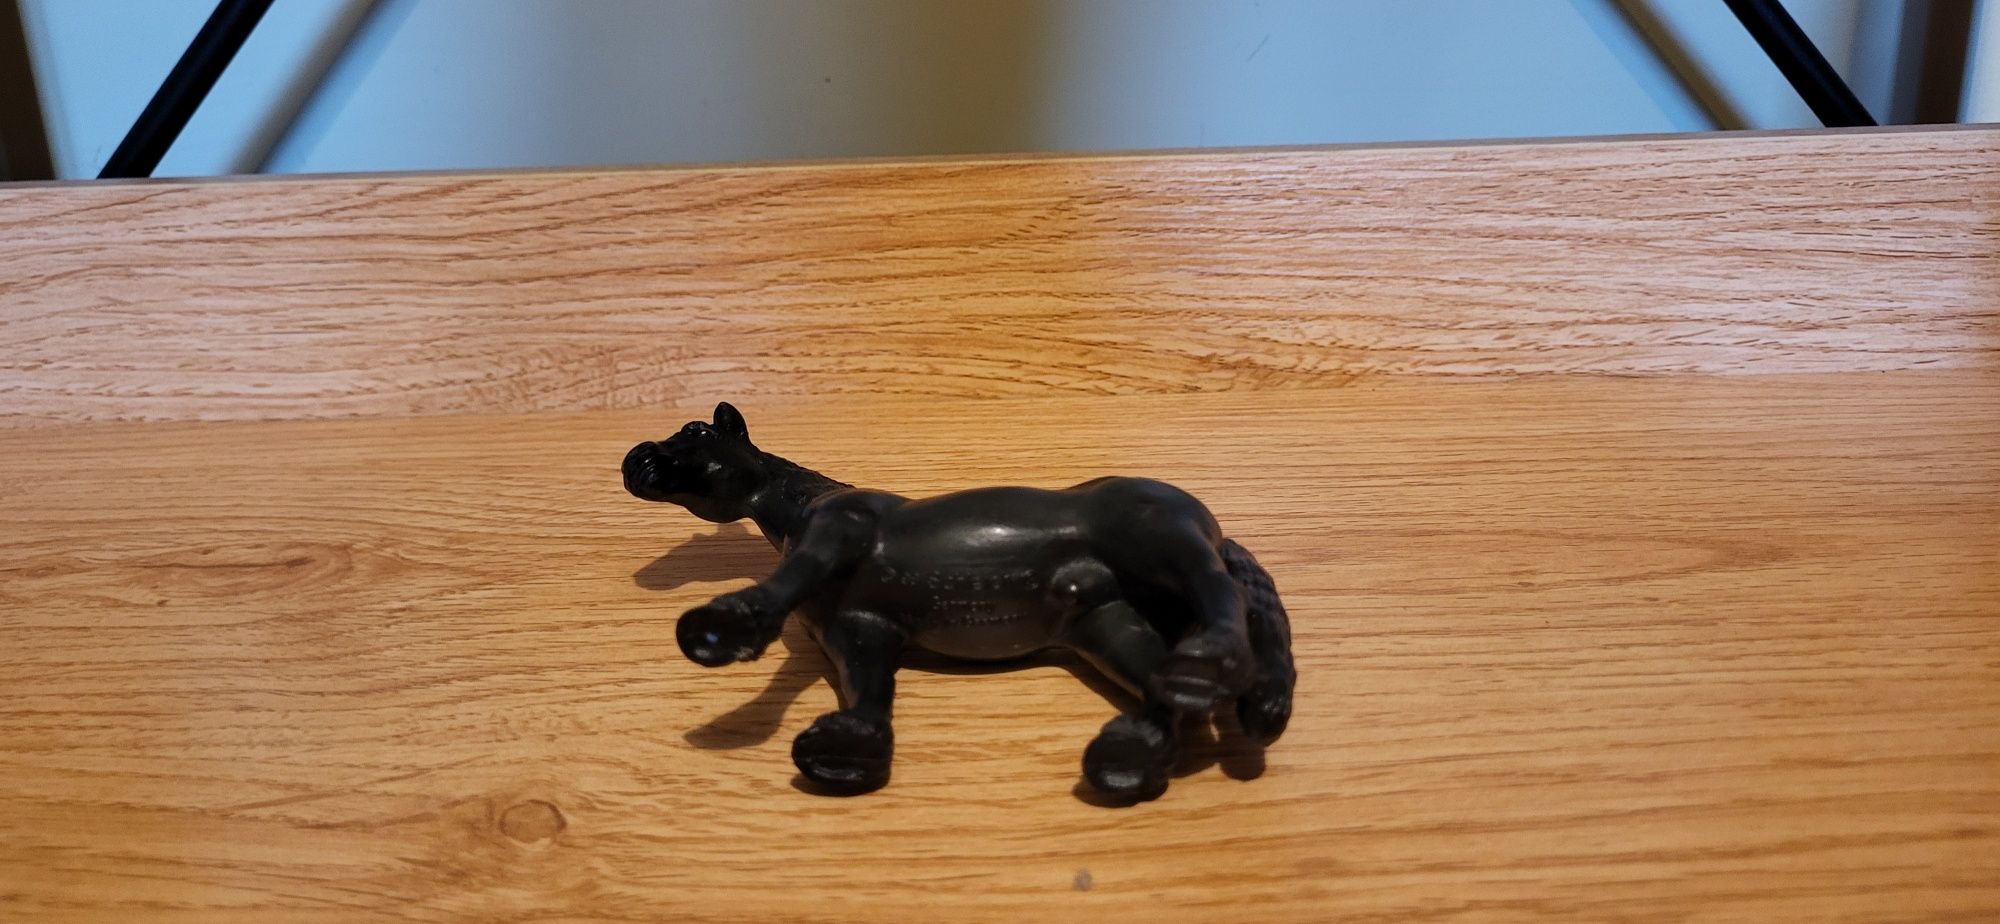 Schleich koń fryzyjski ogier figurka unikat wycofany z 1998 r.